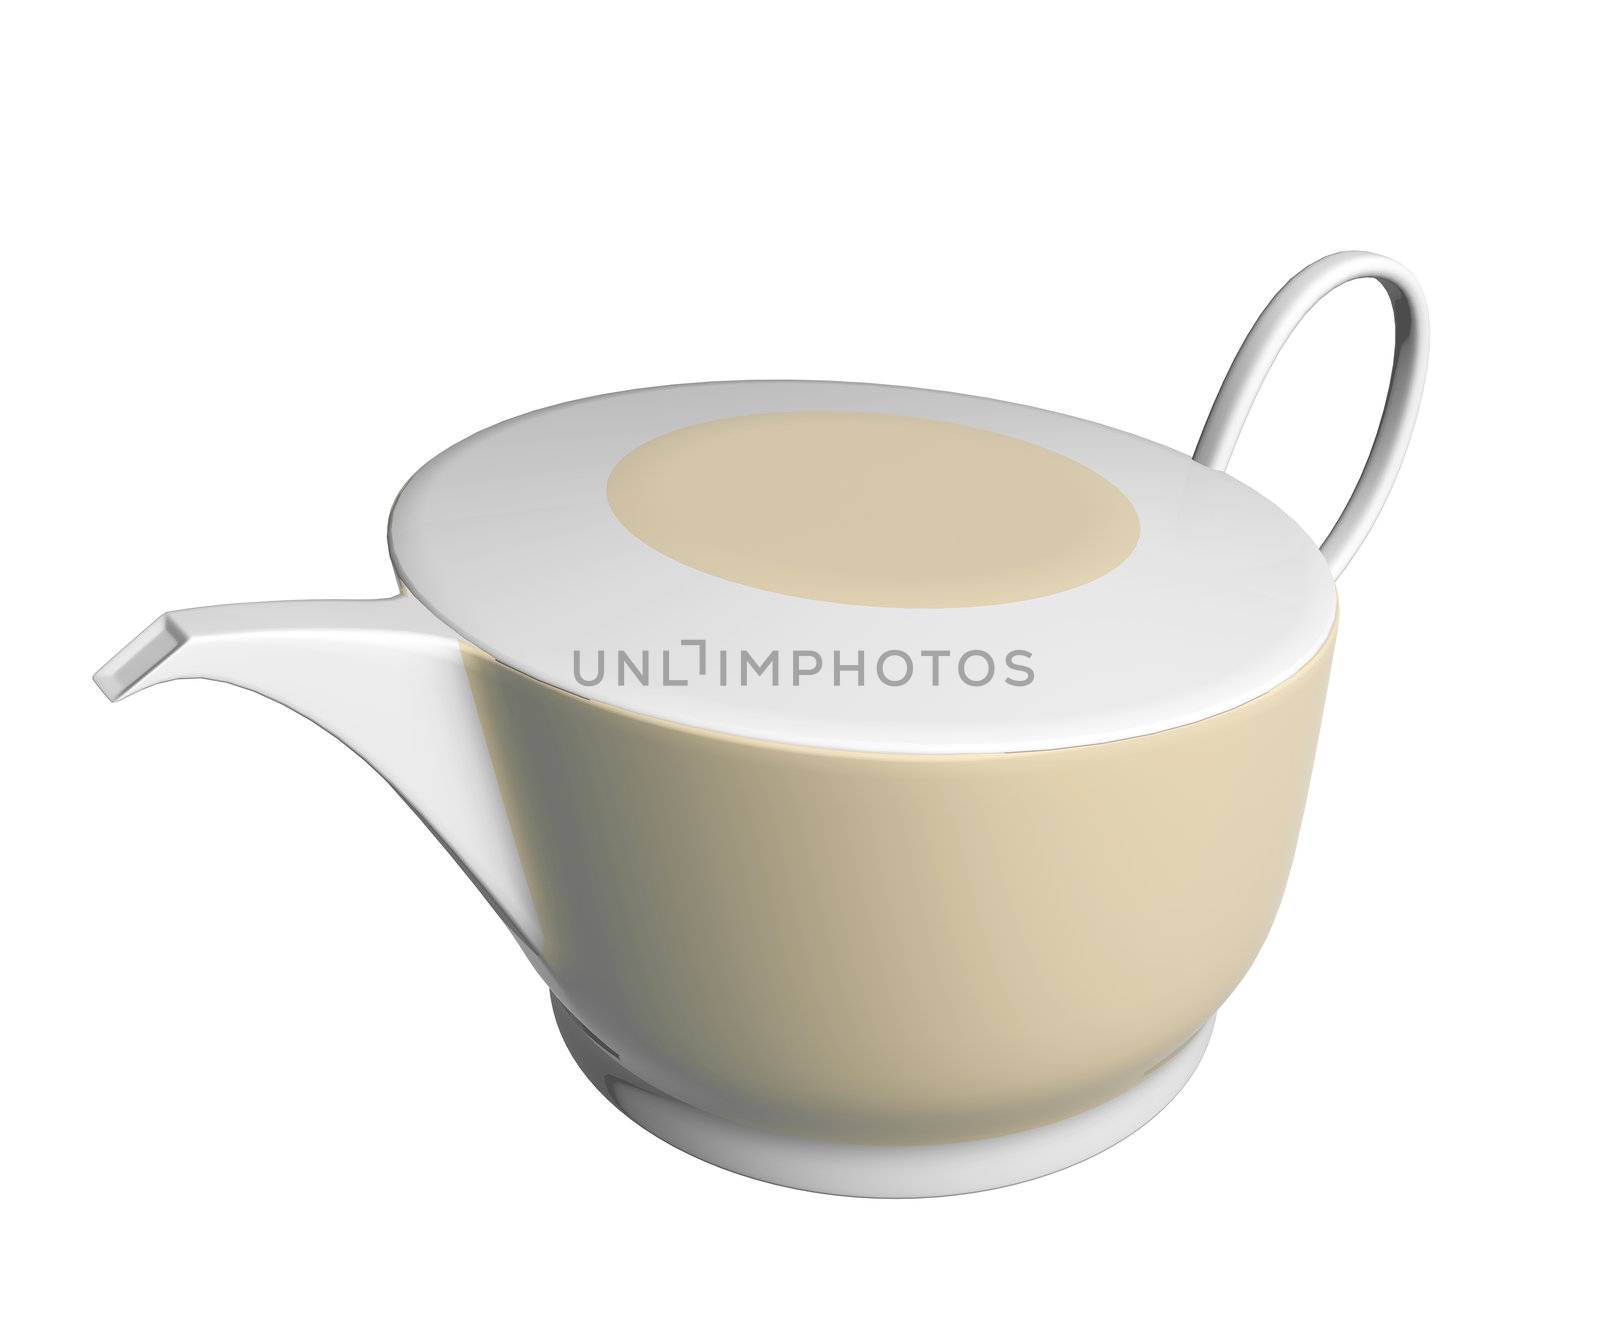 White and beige ceramic tea pot, 3D illustration by Morphart